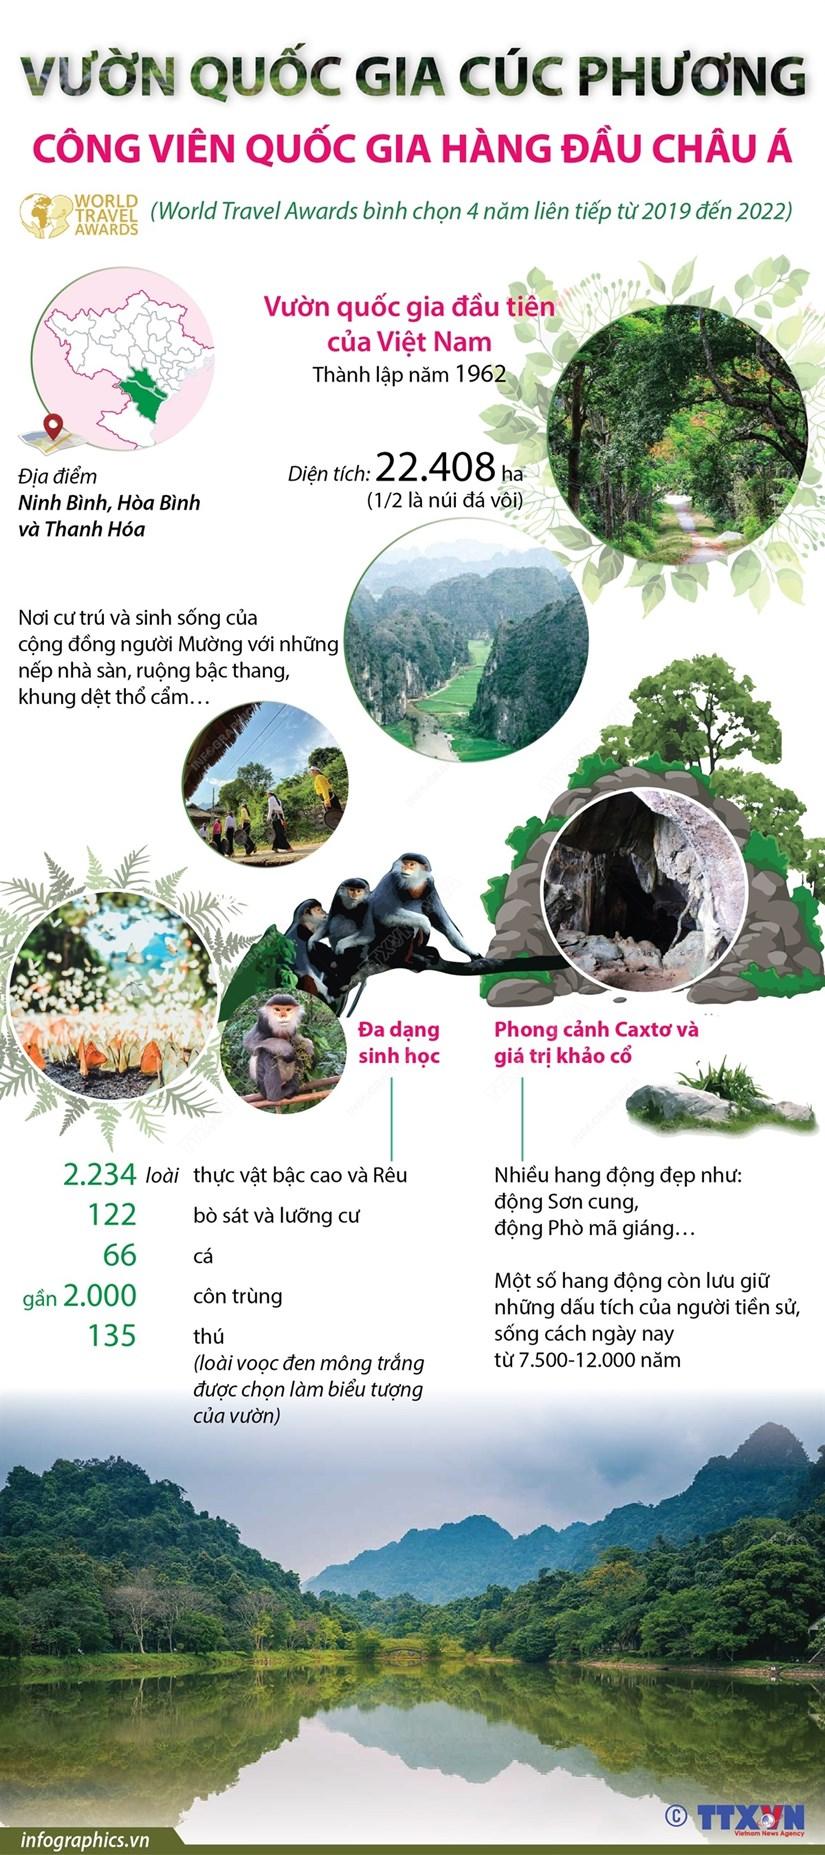 Cúc Phương được vinh danh là Công viên quốc gia hàng đầu châu Á